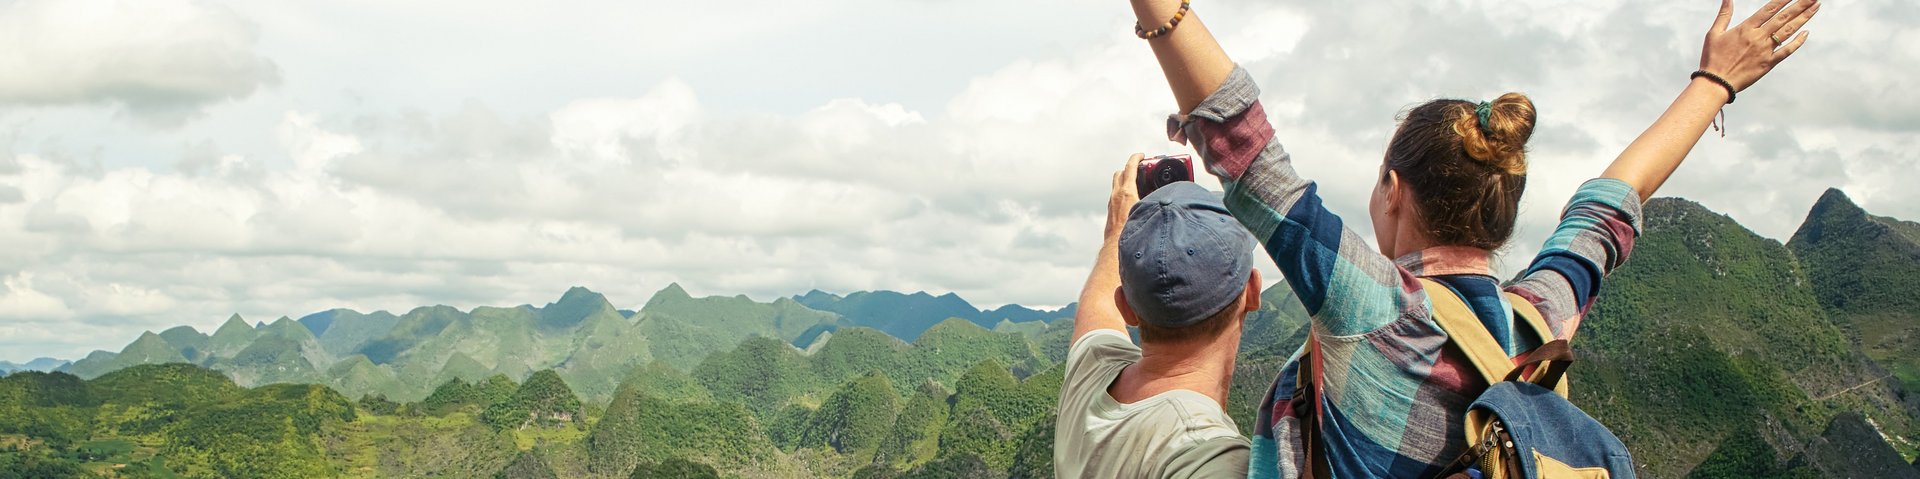 Individualreisende machen Selfie vor einer grünen Hügellandschaft